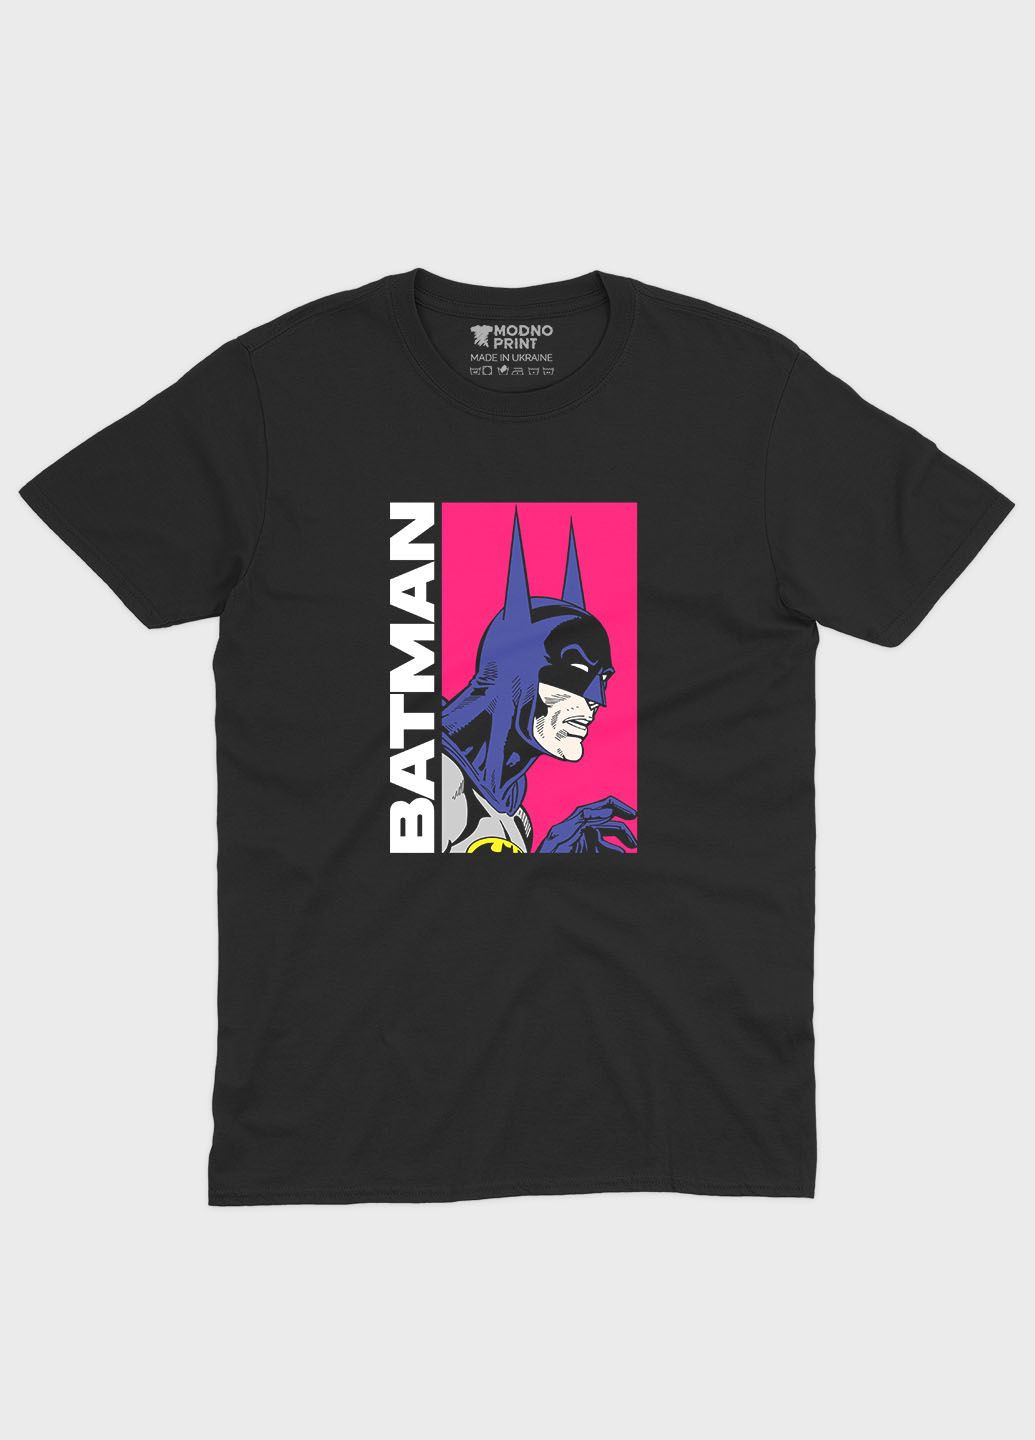 Черная демисезонная футболка для мальчика с принтом супергероя - бэтмен (ts001-1-bl-006-003-024-b) Modno